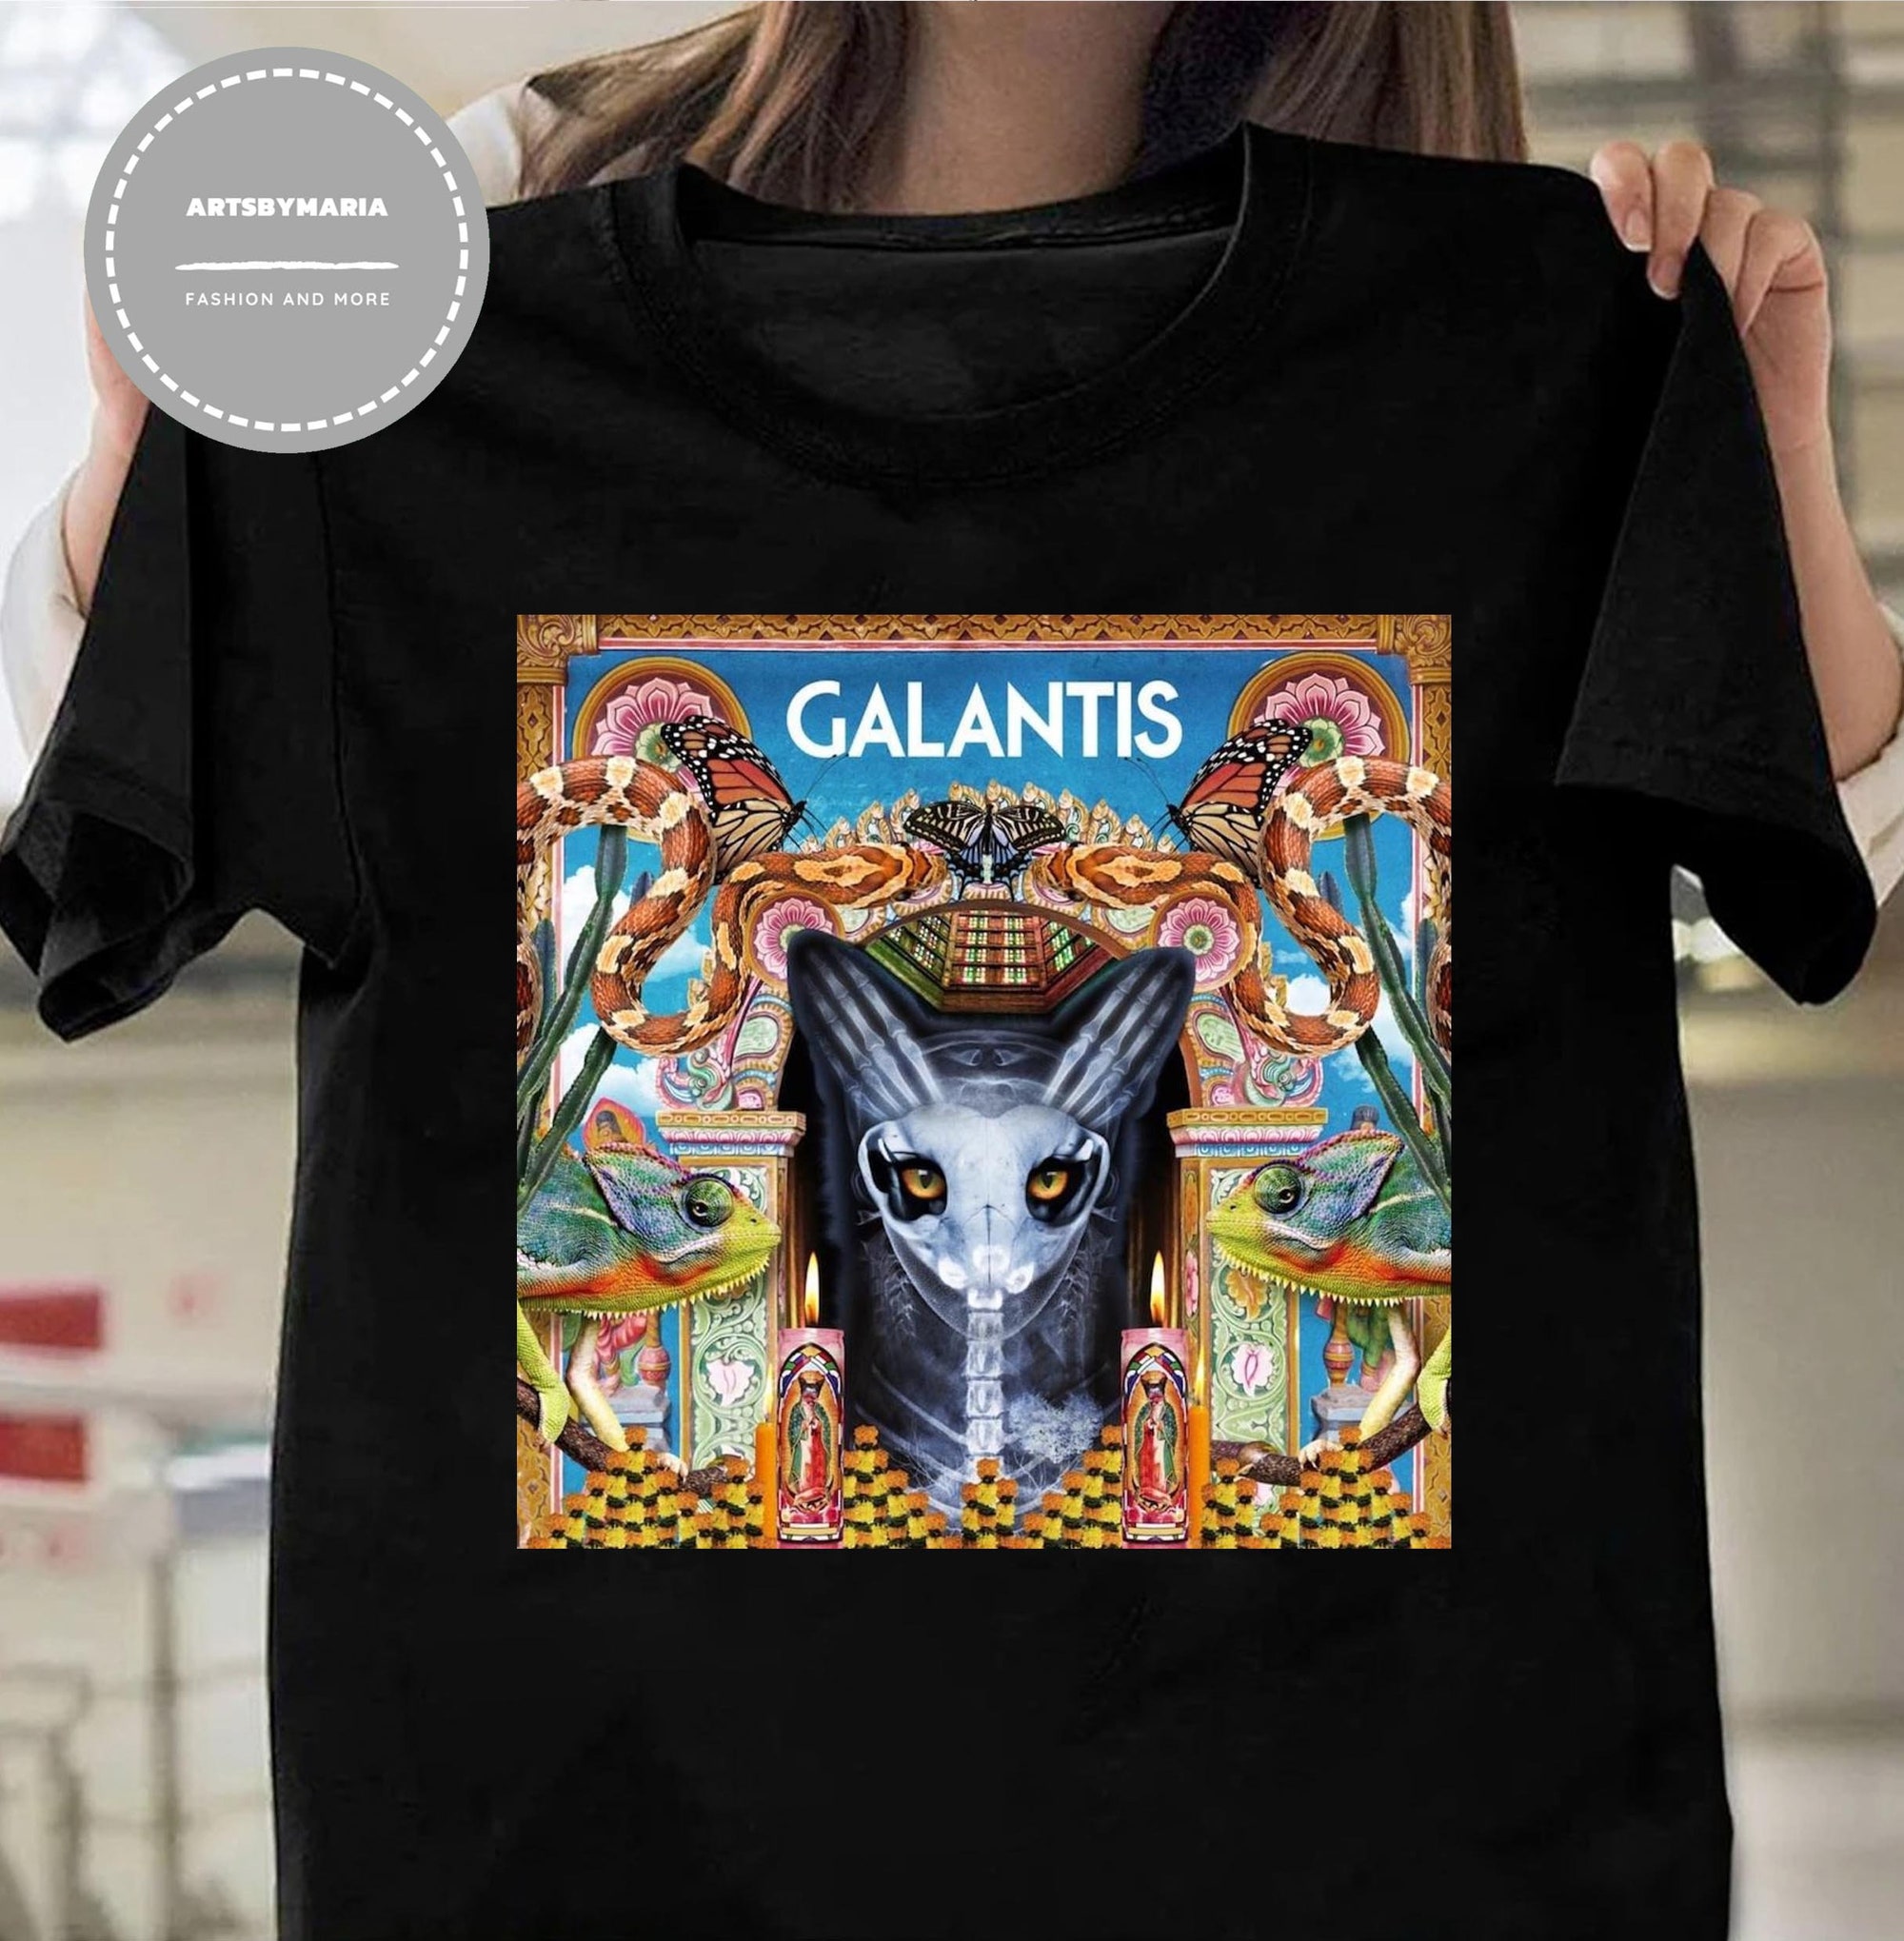 Discover Galantis Church shirt, Galantis Festival Music shirt, Galantis Tour 2022 shirt